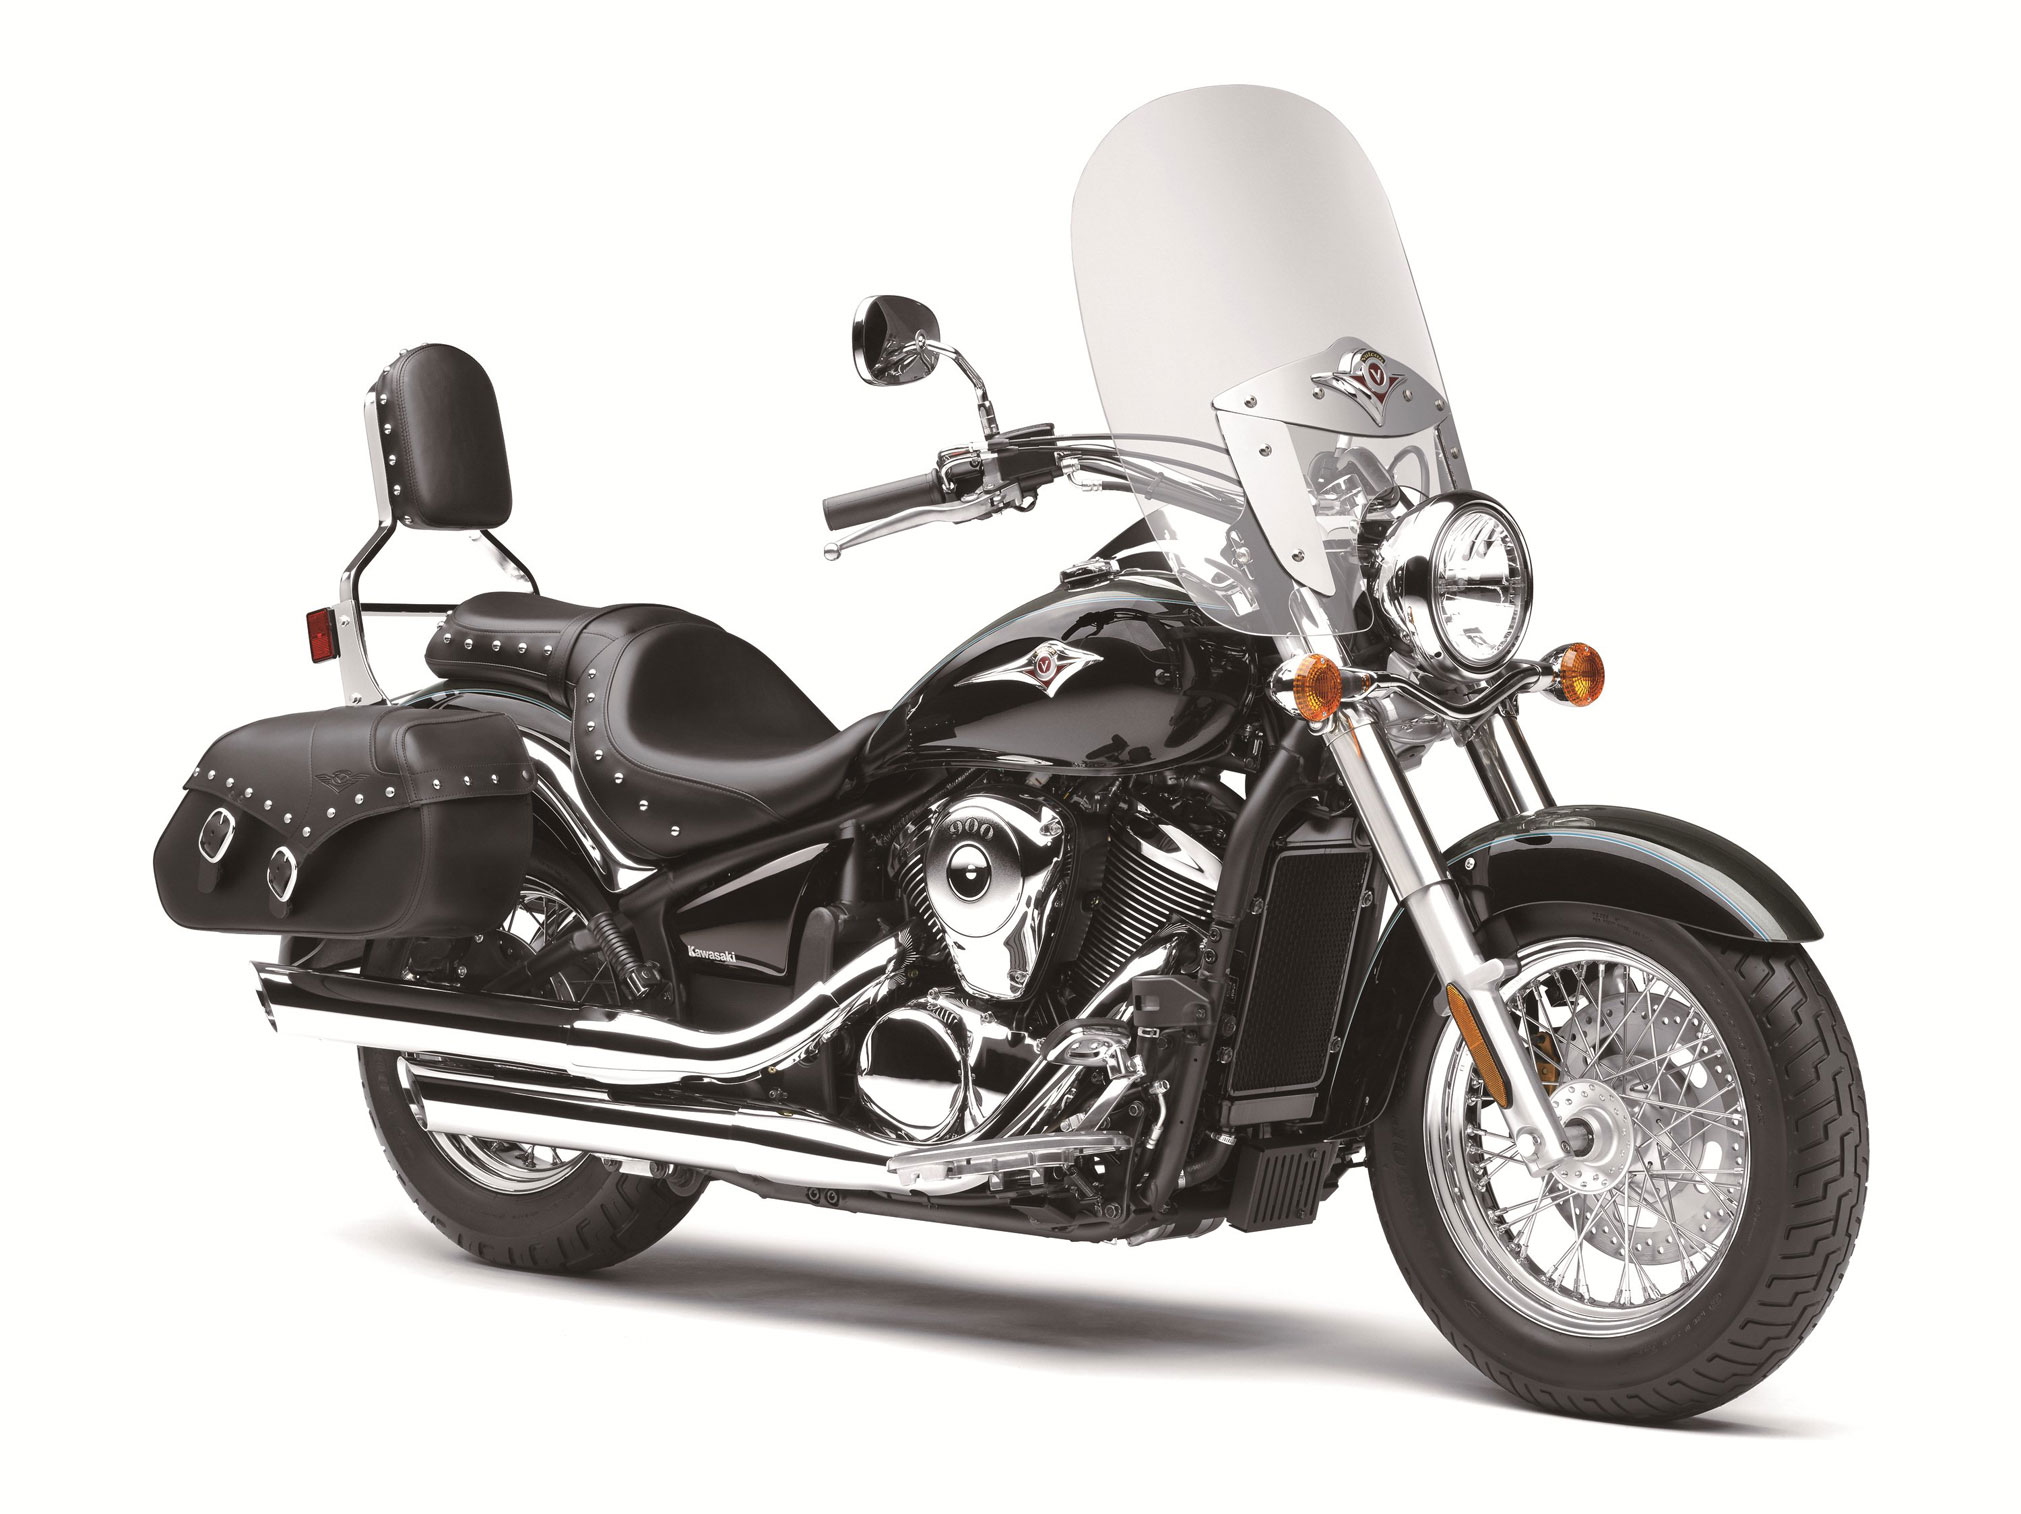 2021 Kawasaki Vulcan 900 Classic LT Guide • Total Motorcycle